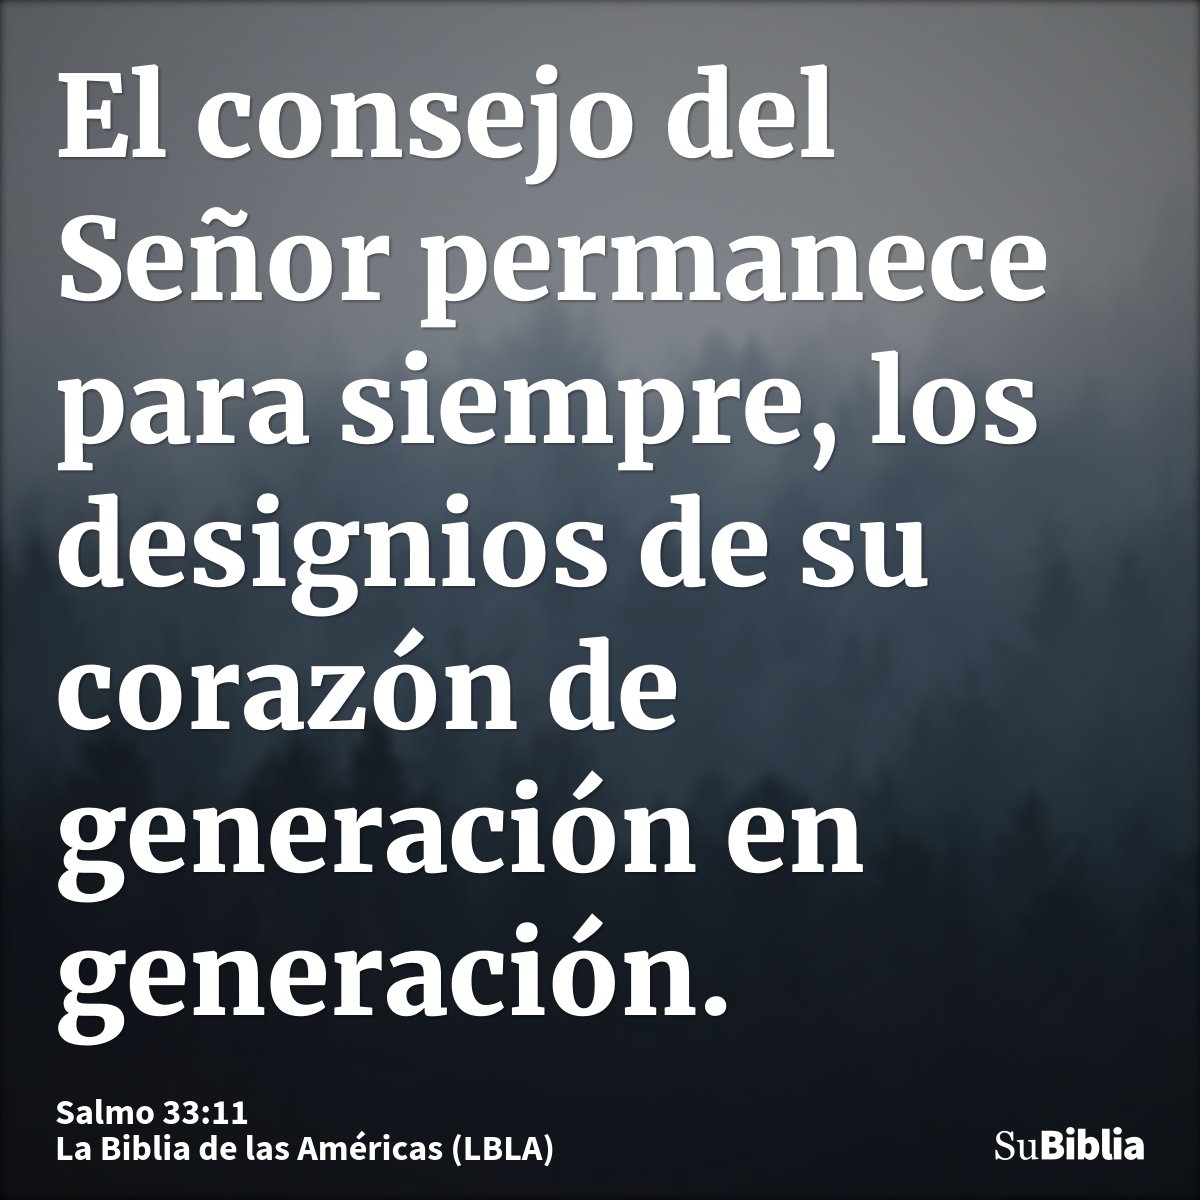 El consejo del Señor permanece para siempre, los designios de su corazón de generación en generación.